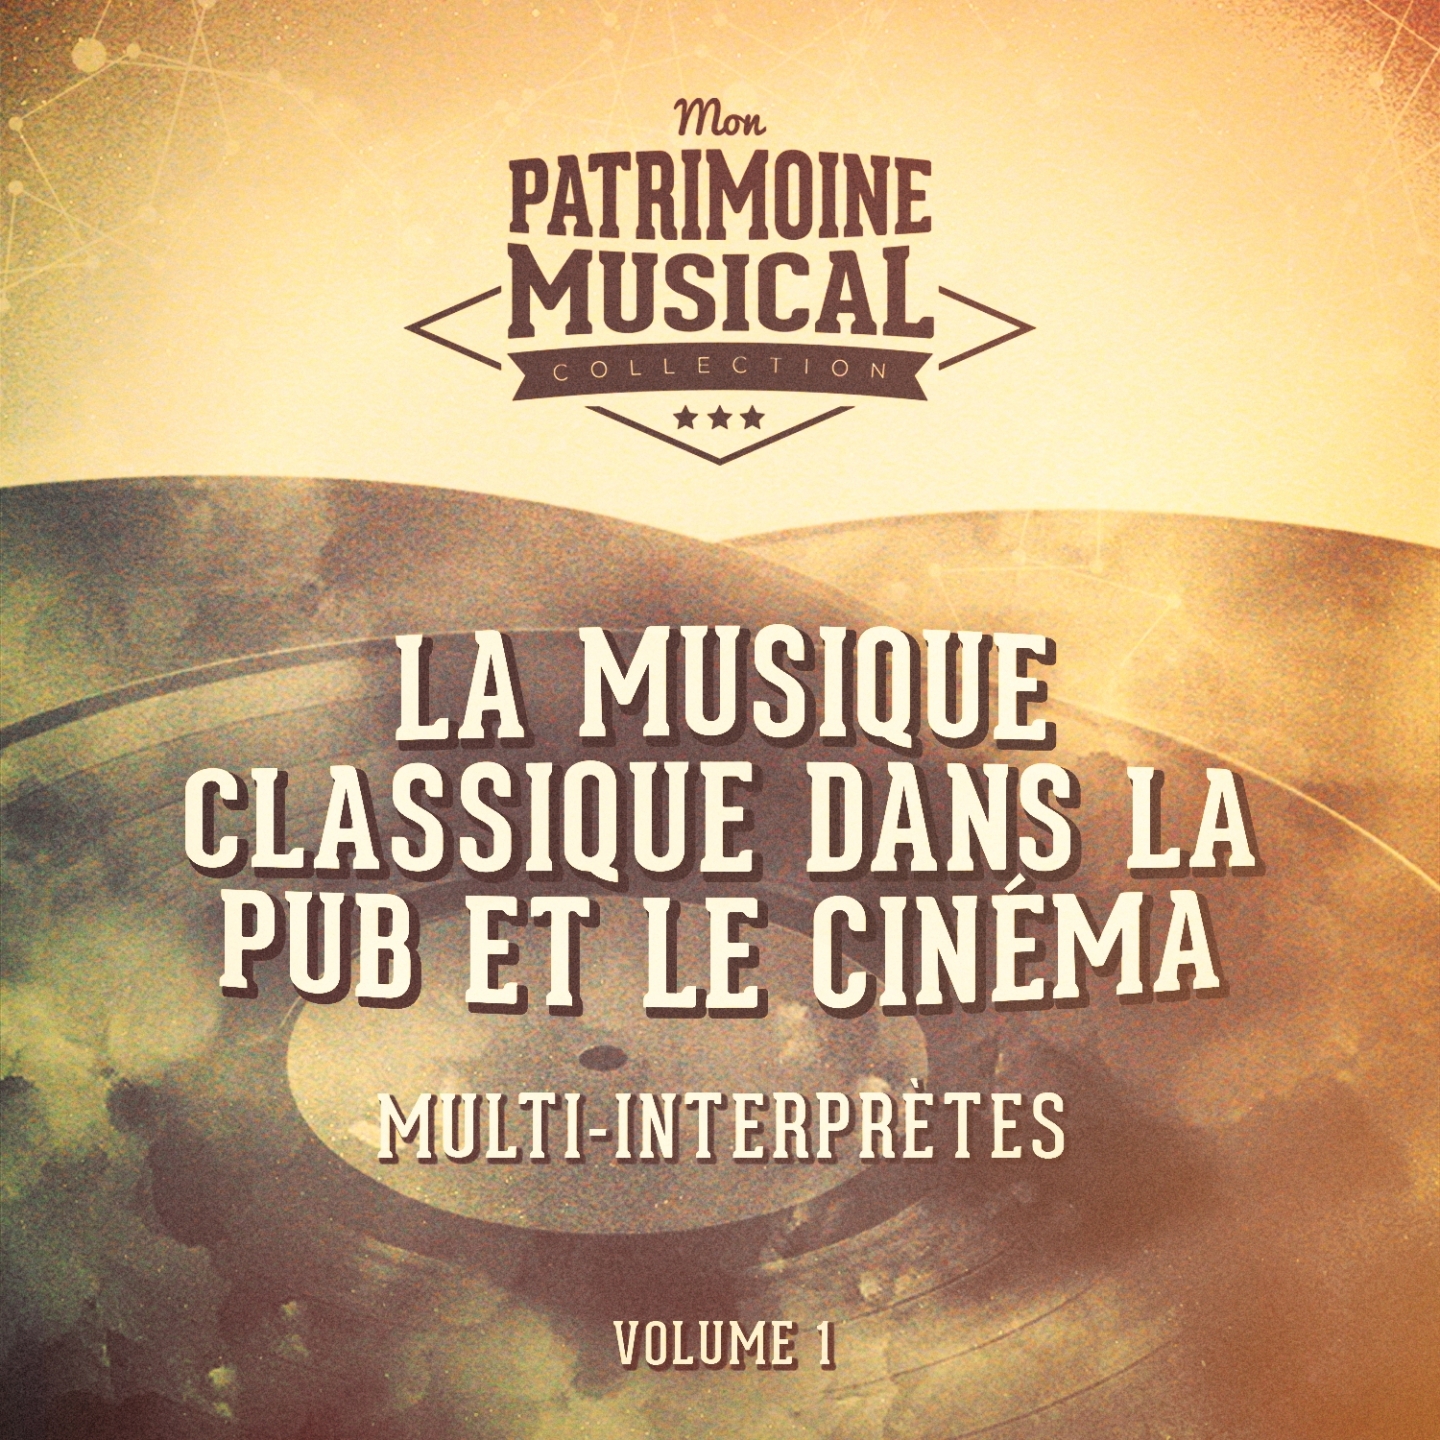 La musique classique dans la pub et le cine ma, Vol. 1